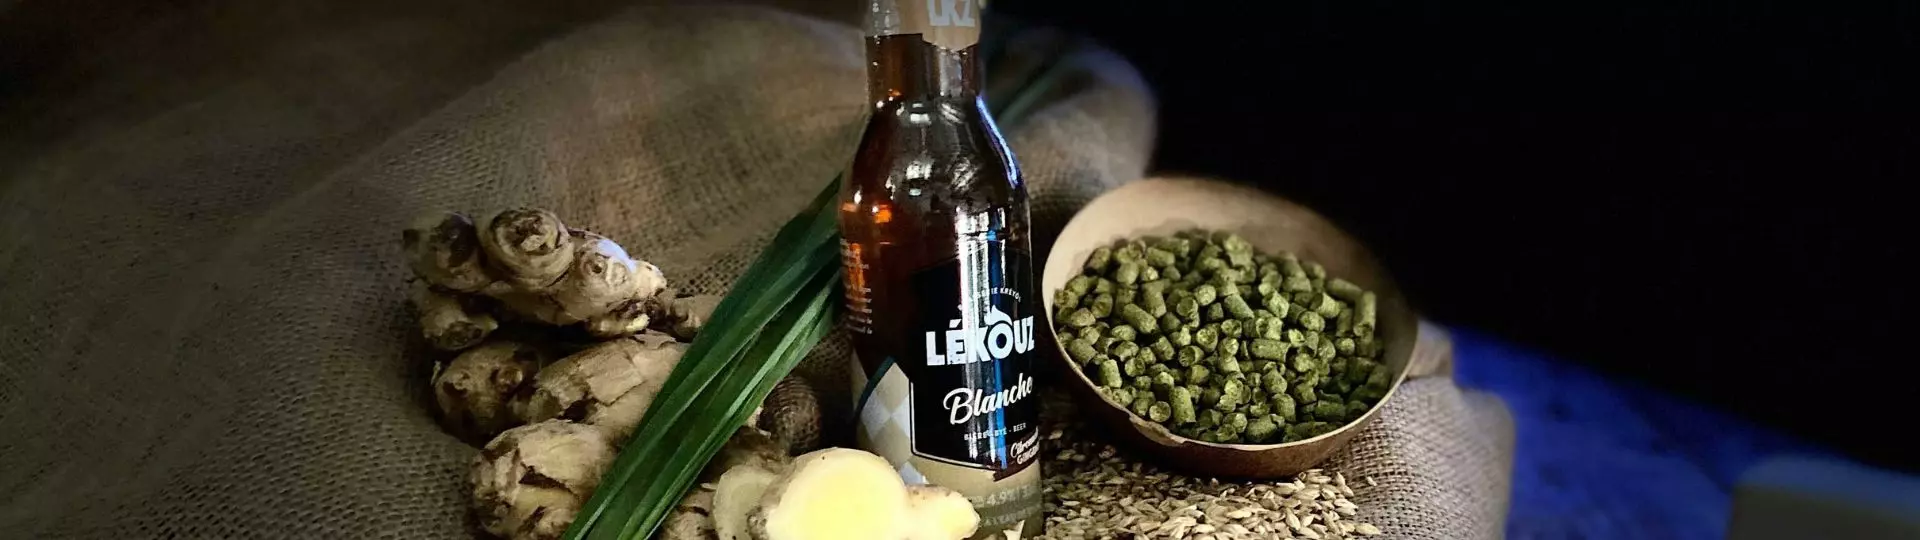 lekouz-brasserie-beer-biere-blanche